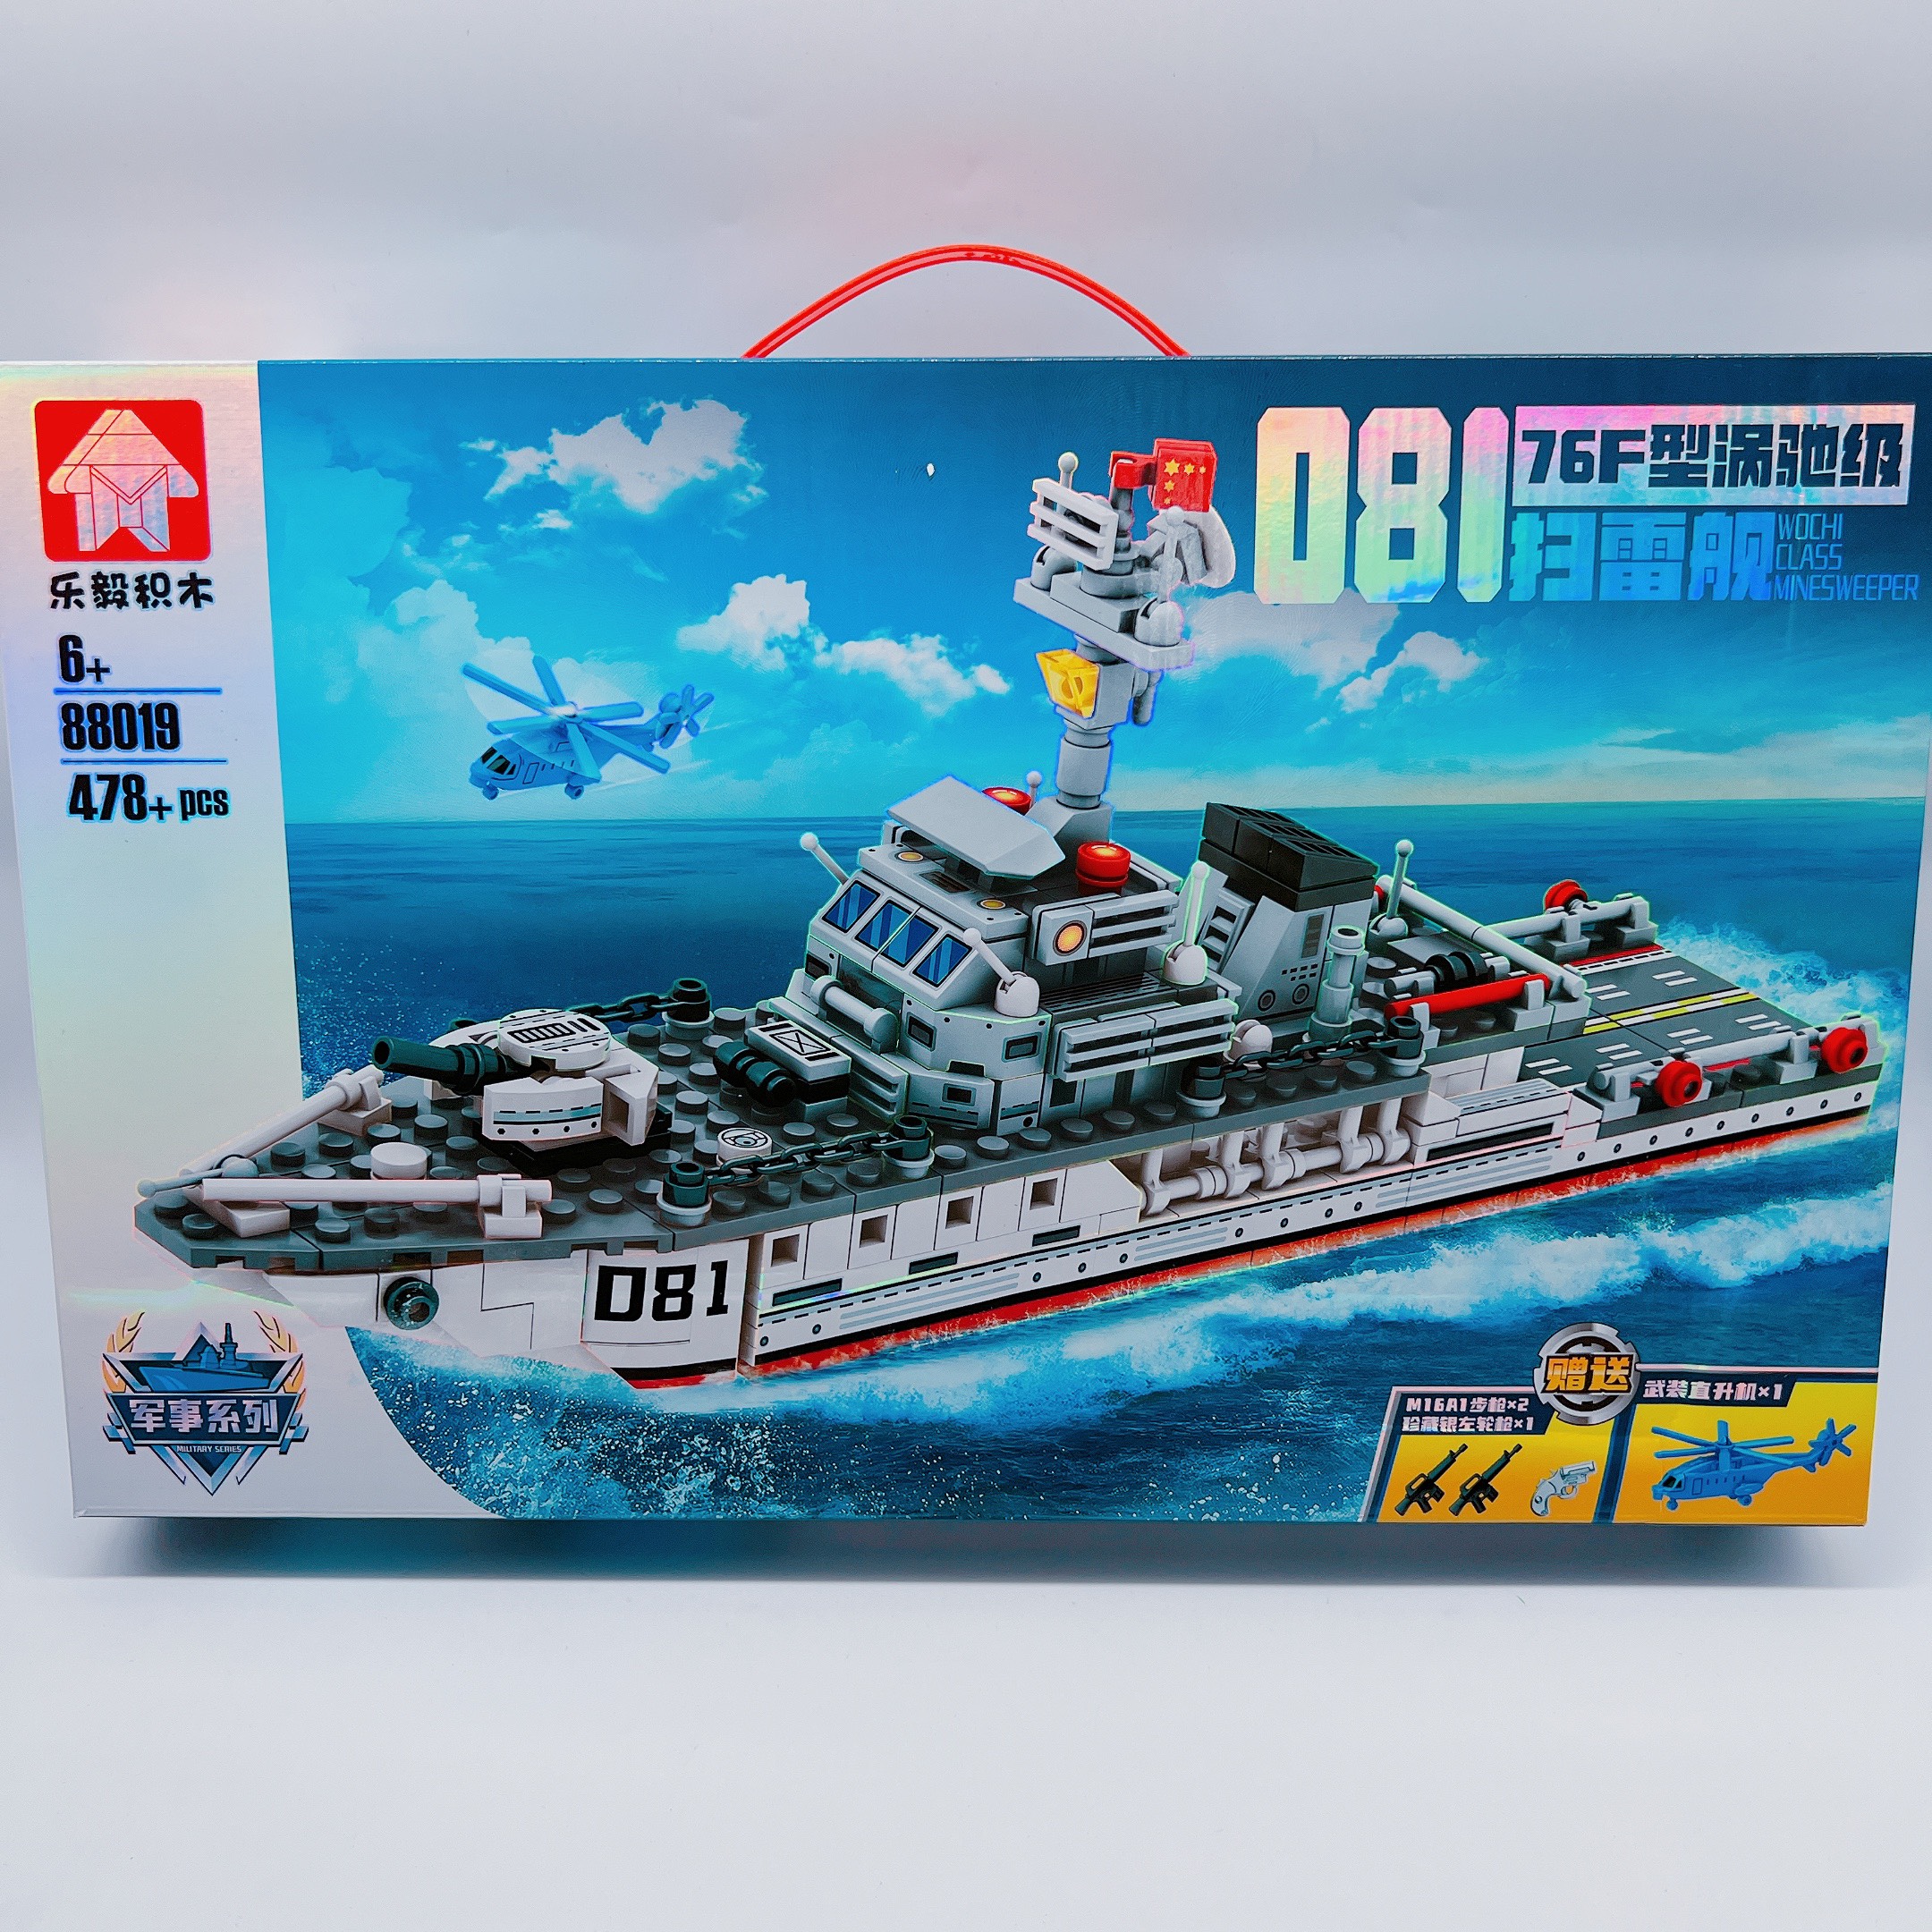 Lego tàu chiến, lego tàu hải quân 88019 478 pcs, đồ chơi cho bé nhựa abs loại 1 - Quà tặng ý nghĩa